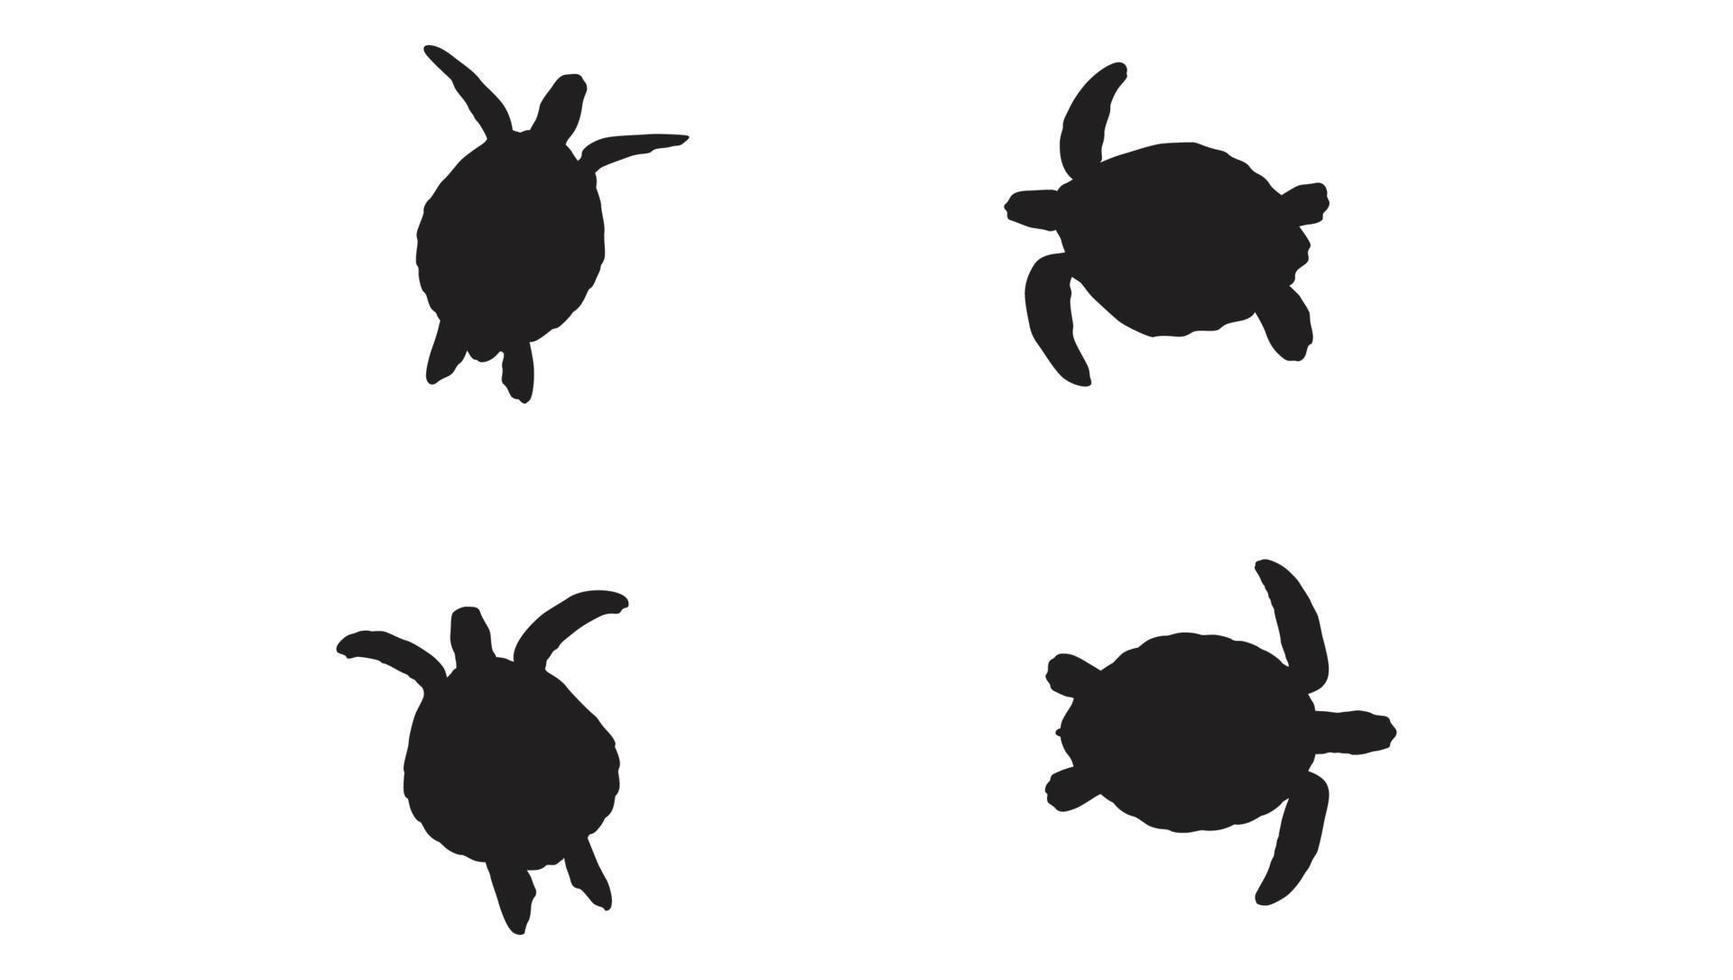 samling av djur- sköldpadda silhuett i annorlunda poser fri vektor